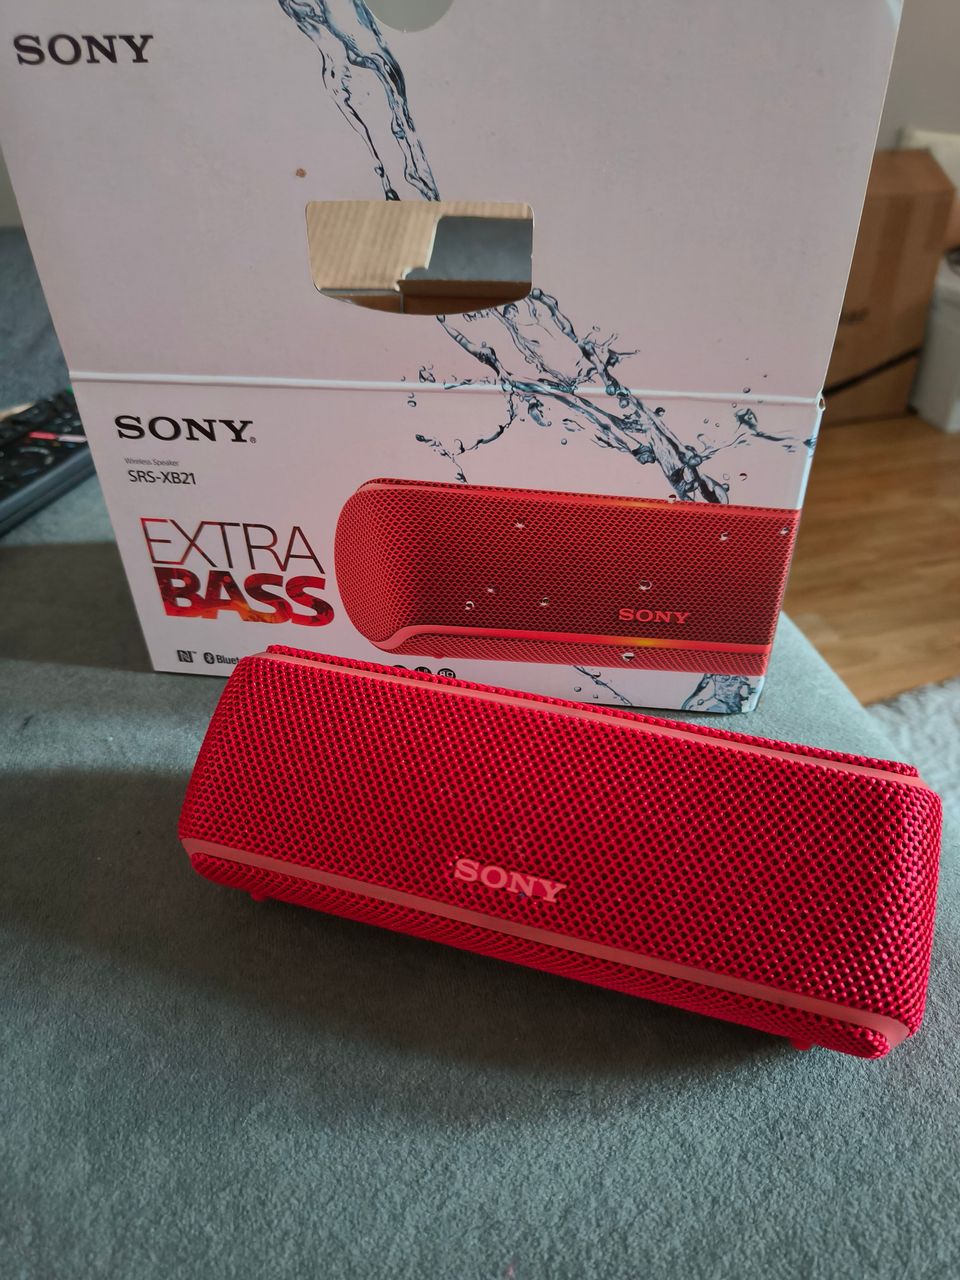 Sony SRS-XB21 extra bass